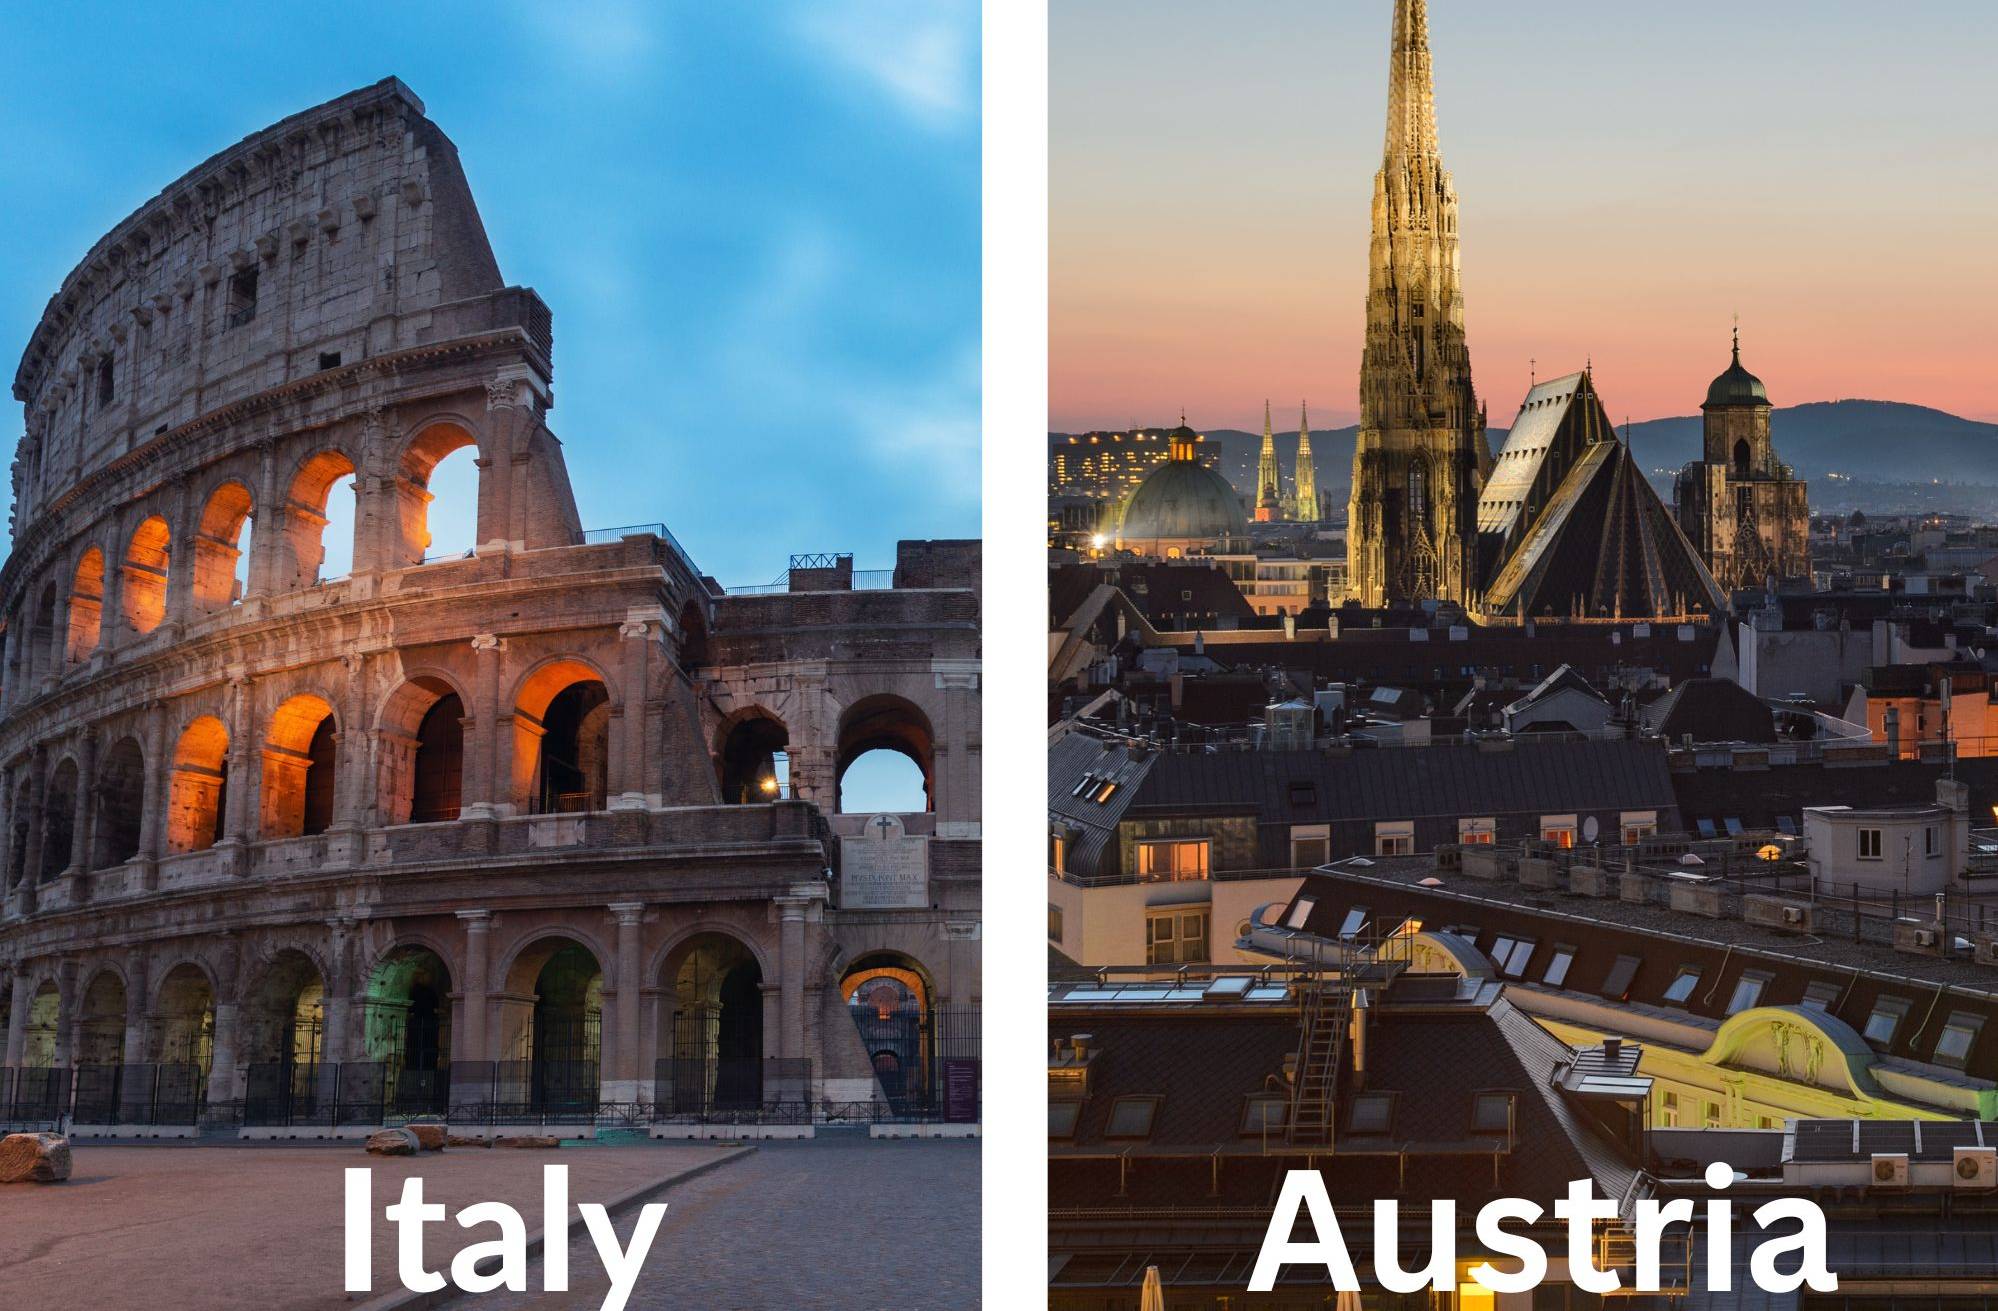 Austria - Vienna and Italy - Roma